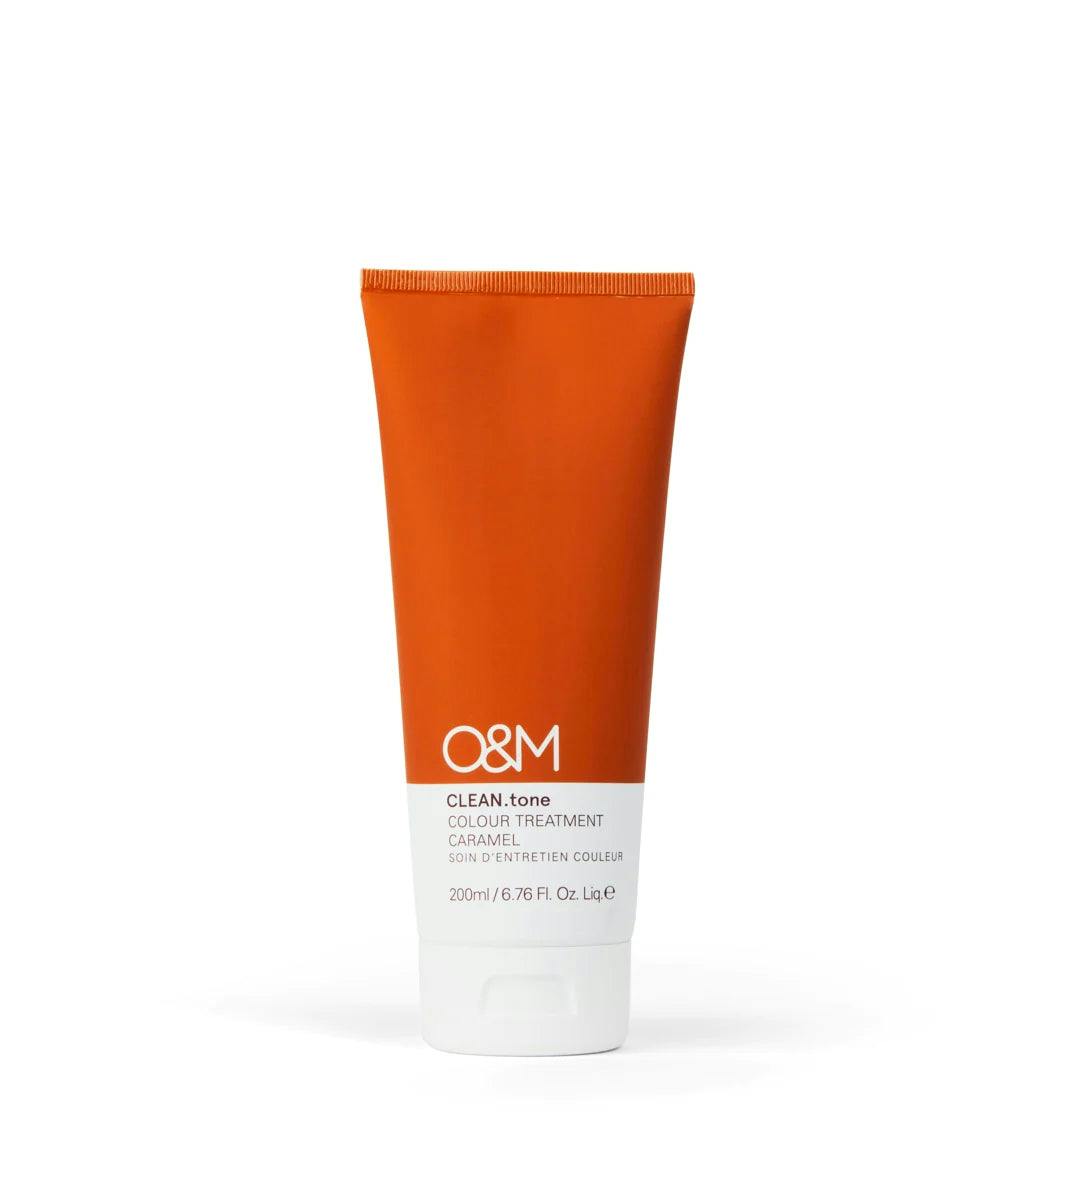 O&M Clean.tone Colour Treatment Caramel 200ml